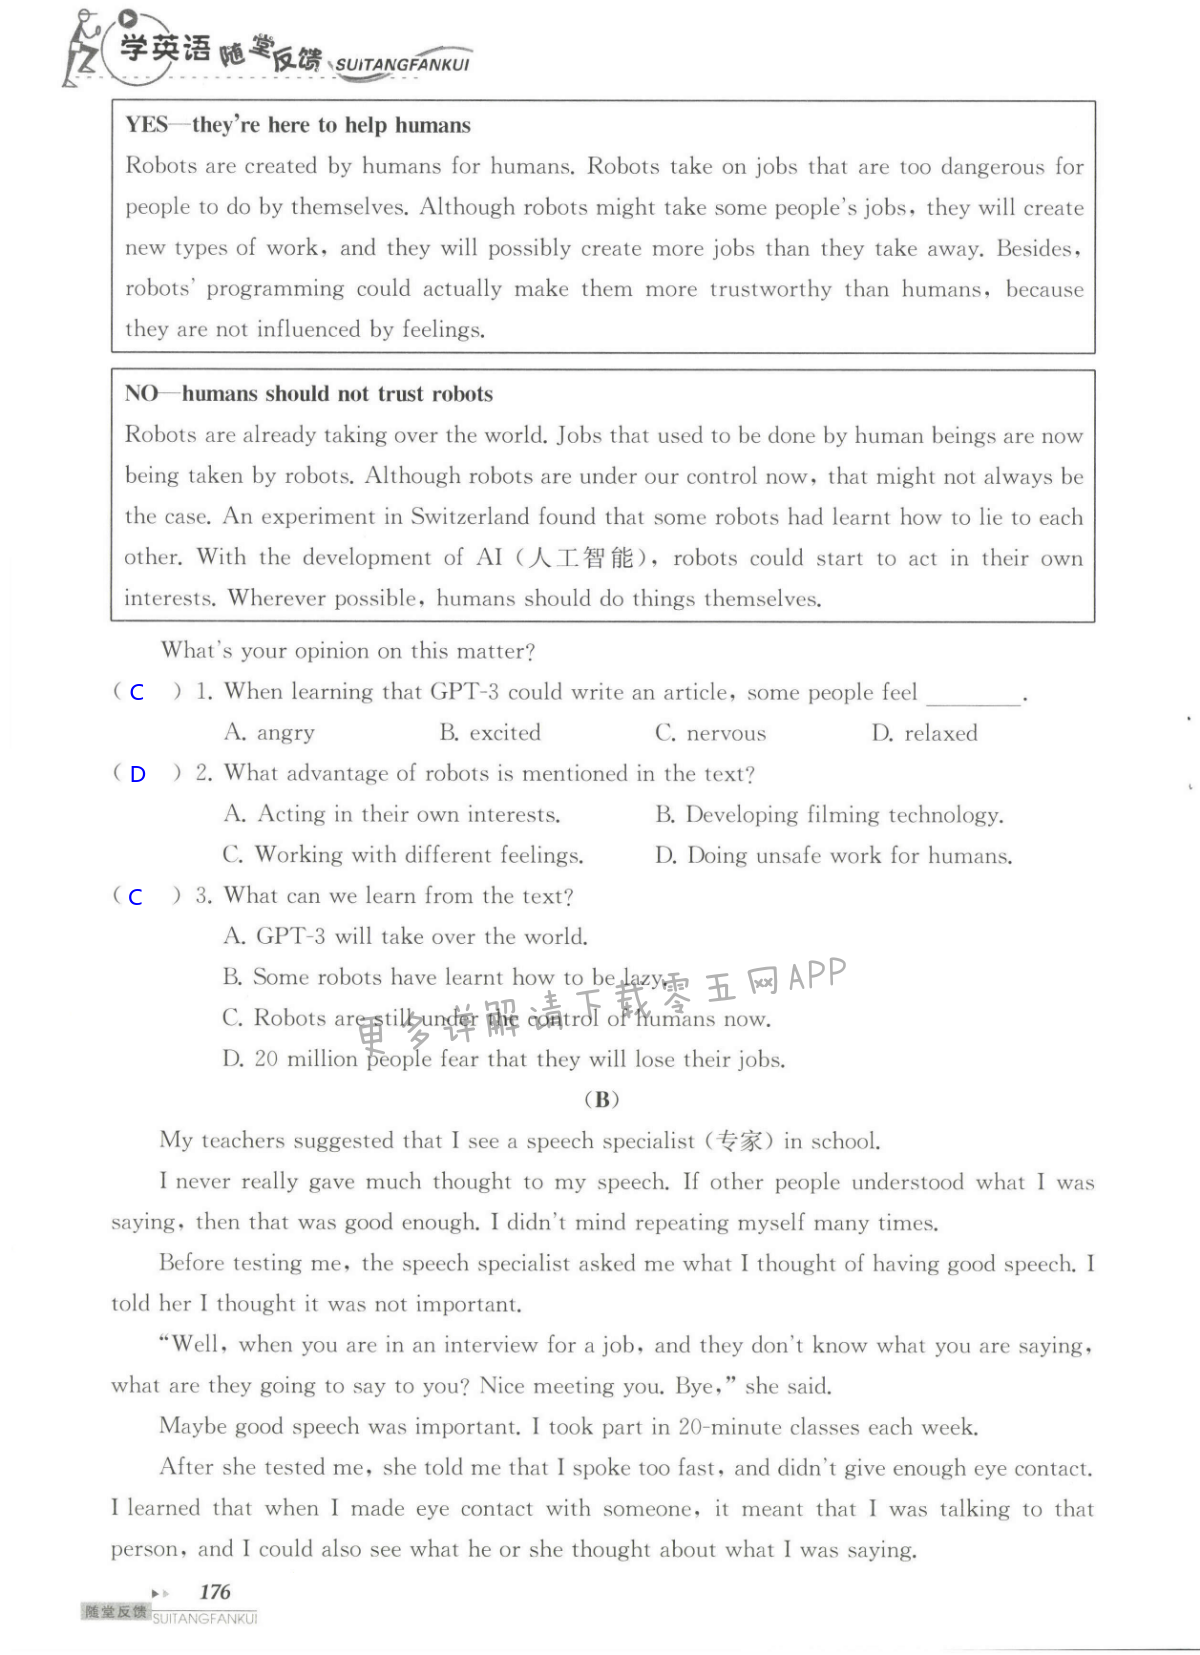 单元综合测试卷 Test for Unit 3 of 9B - 第176页